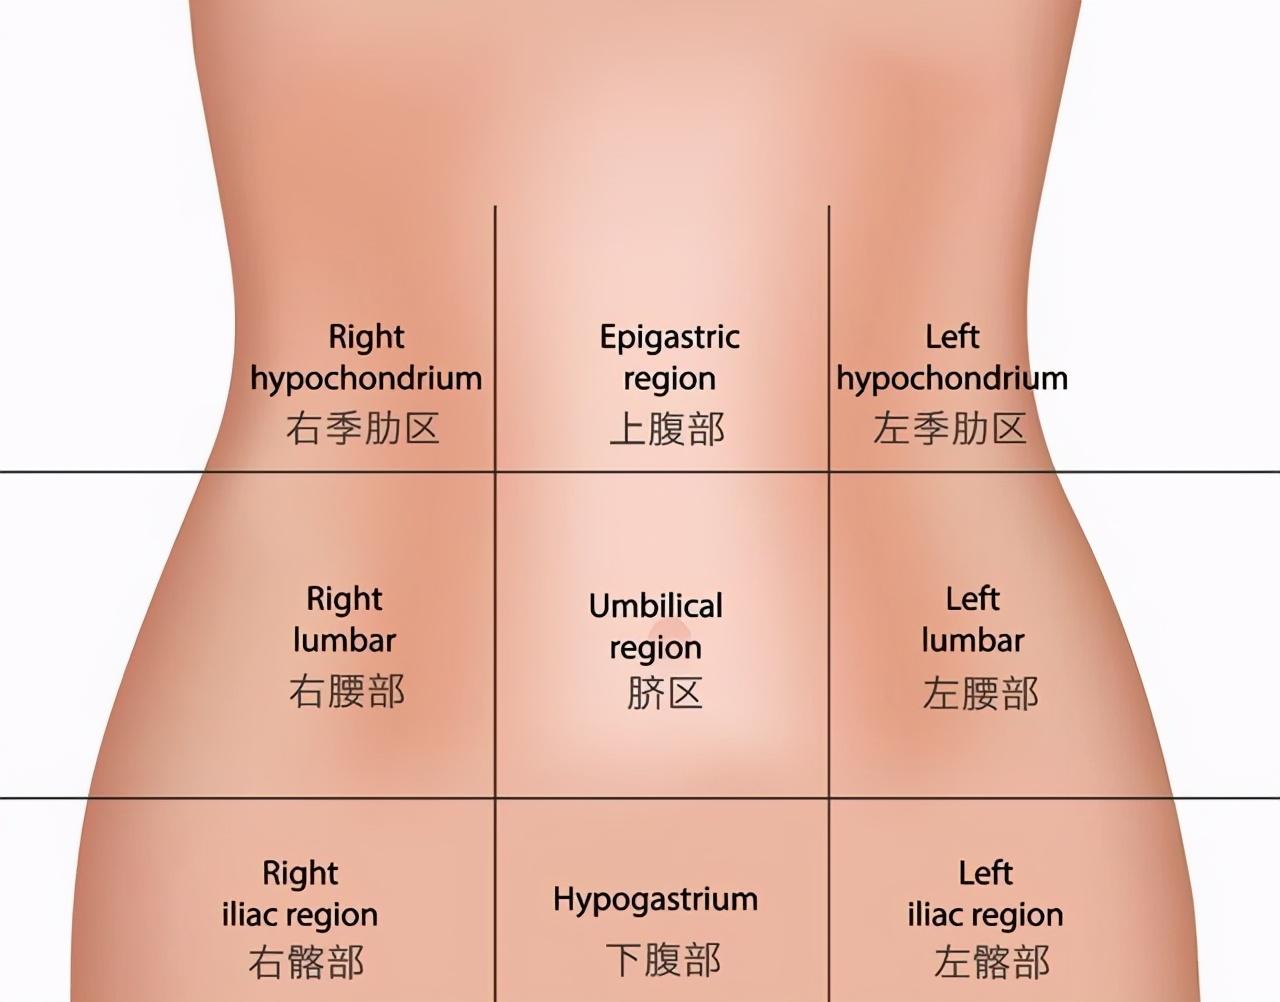 腹部左下方疼痛是什么原因,左侧腹部疼痛引起的原因